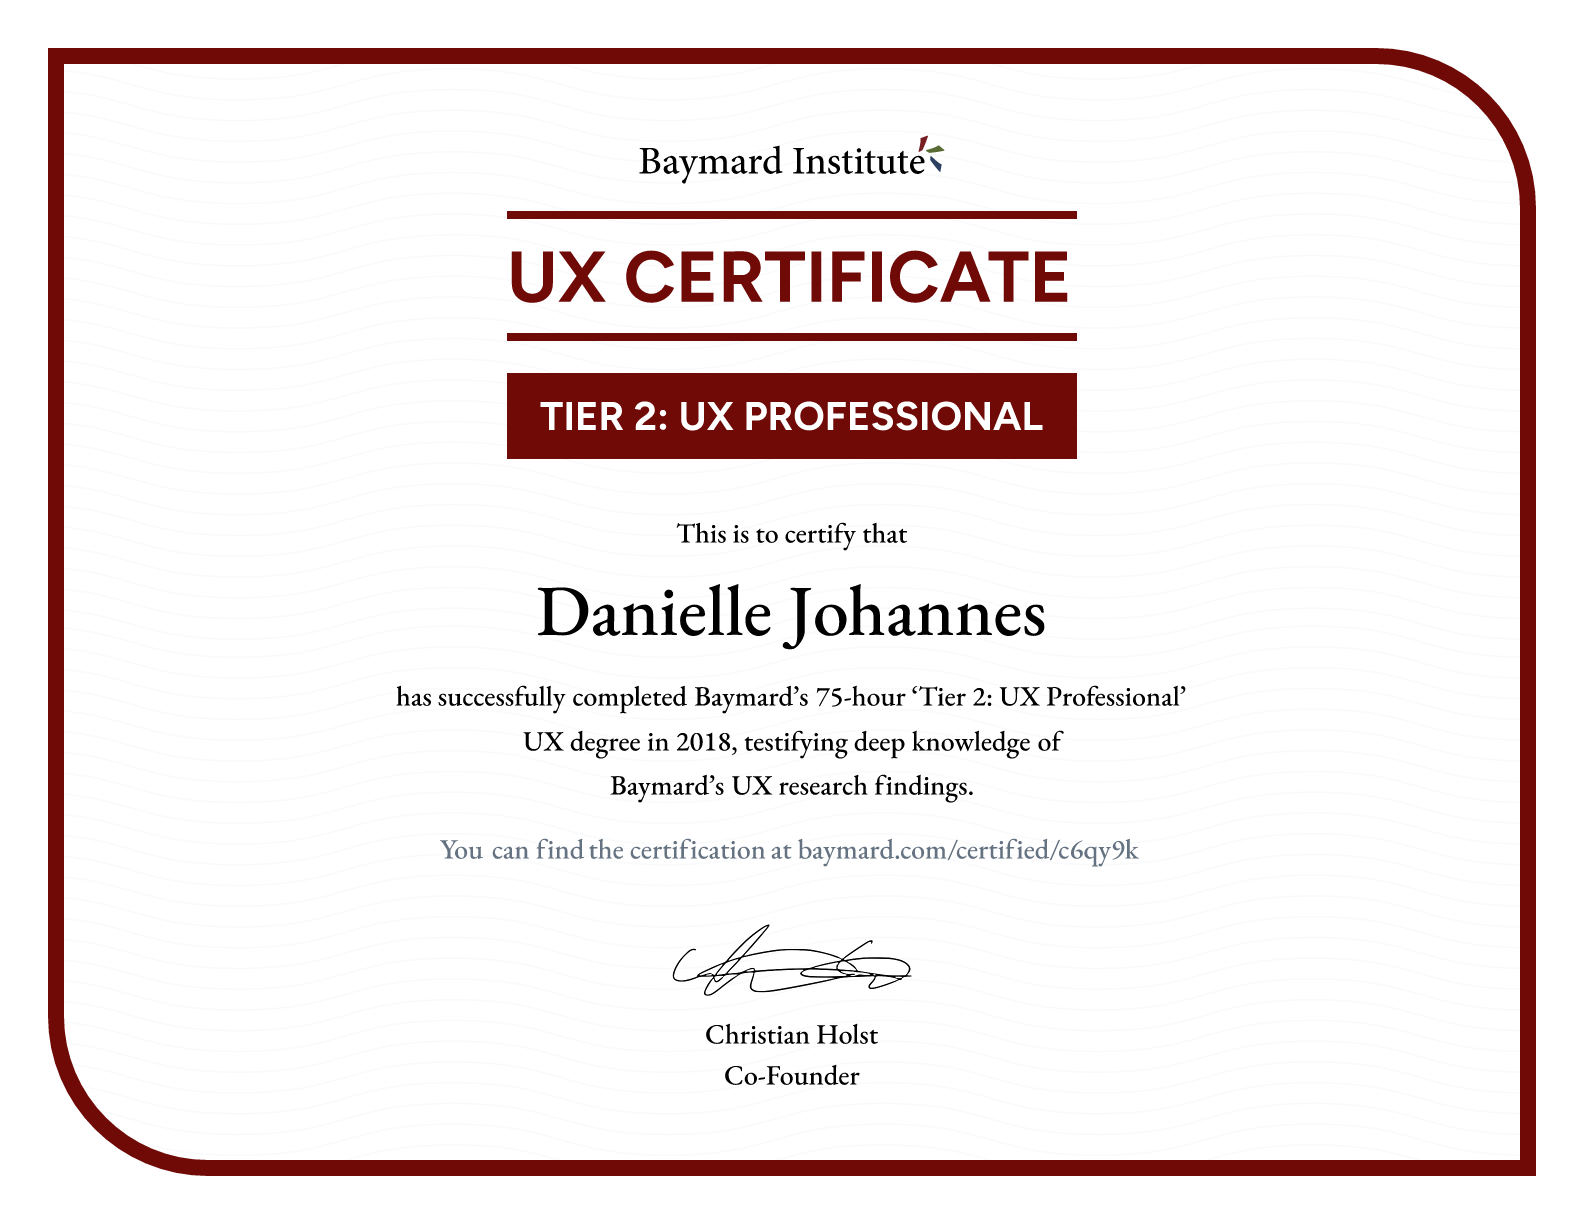 Danielle Johannes’s certificate